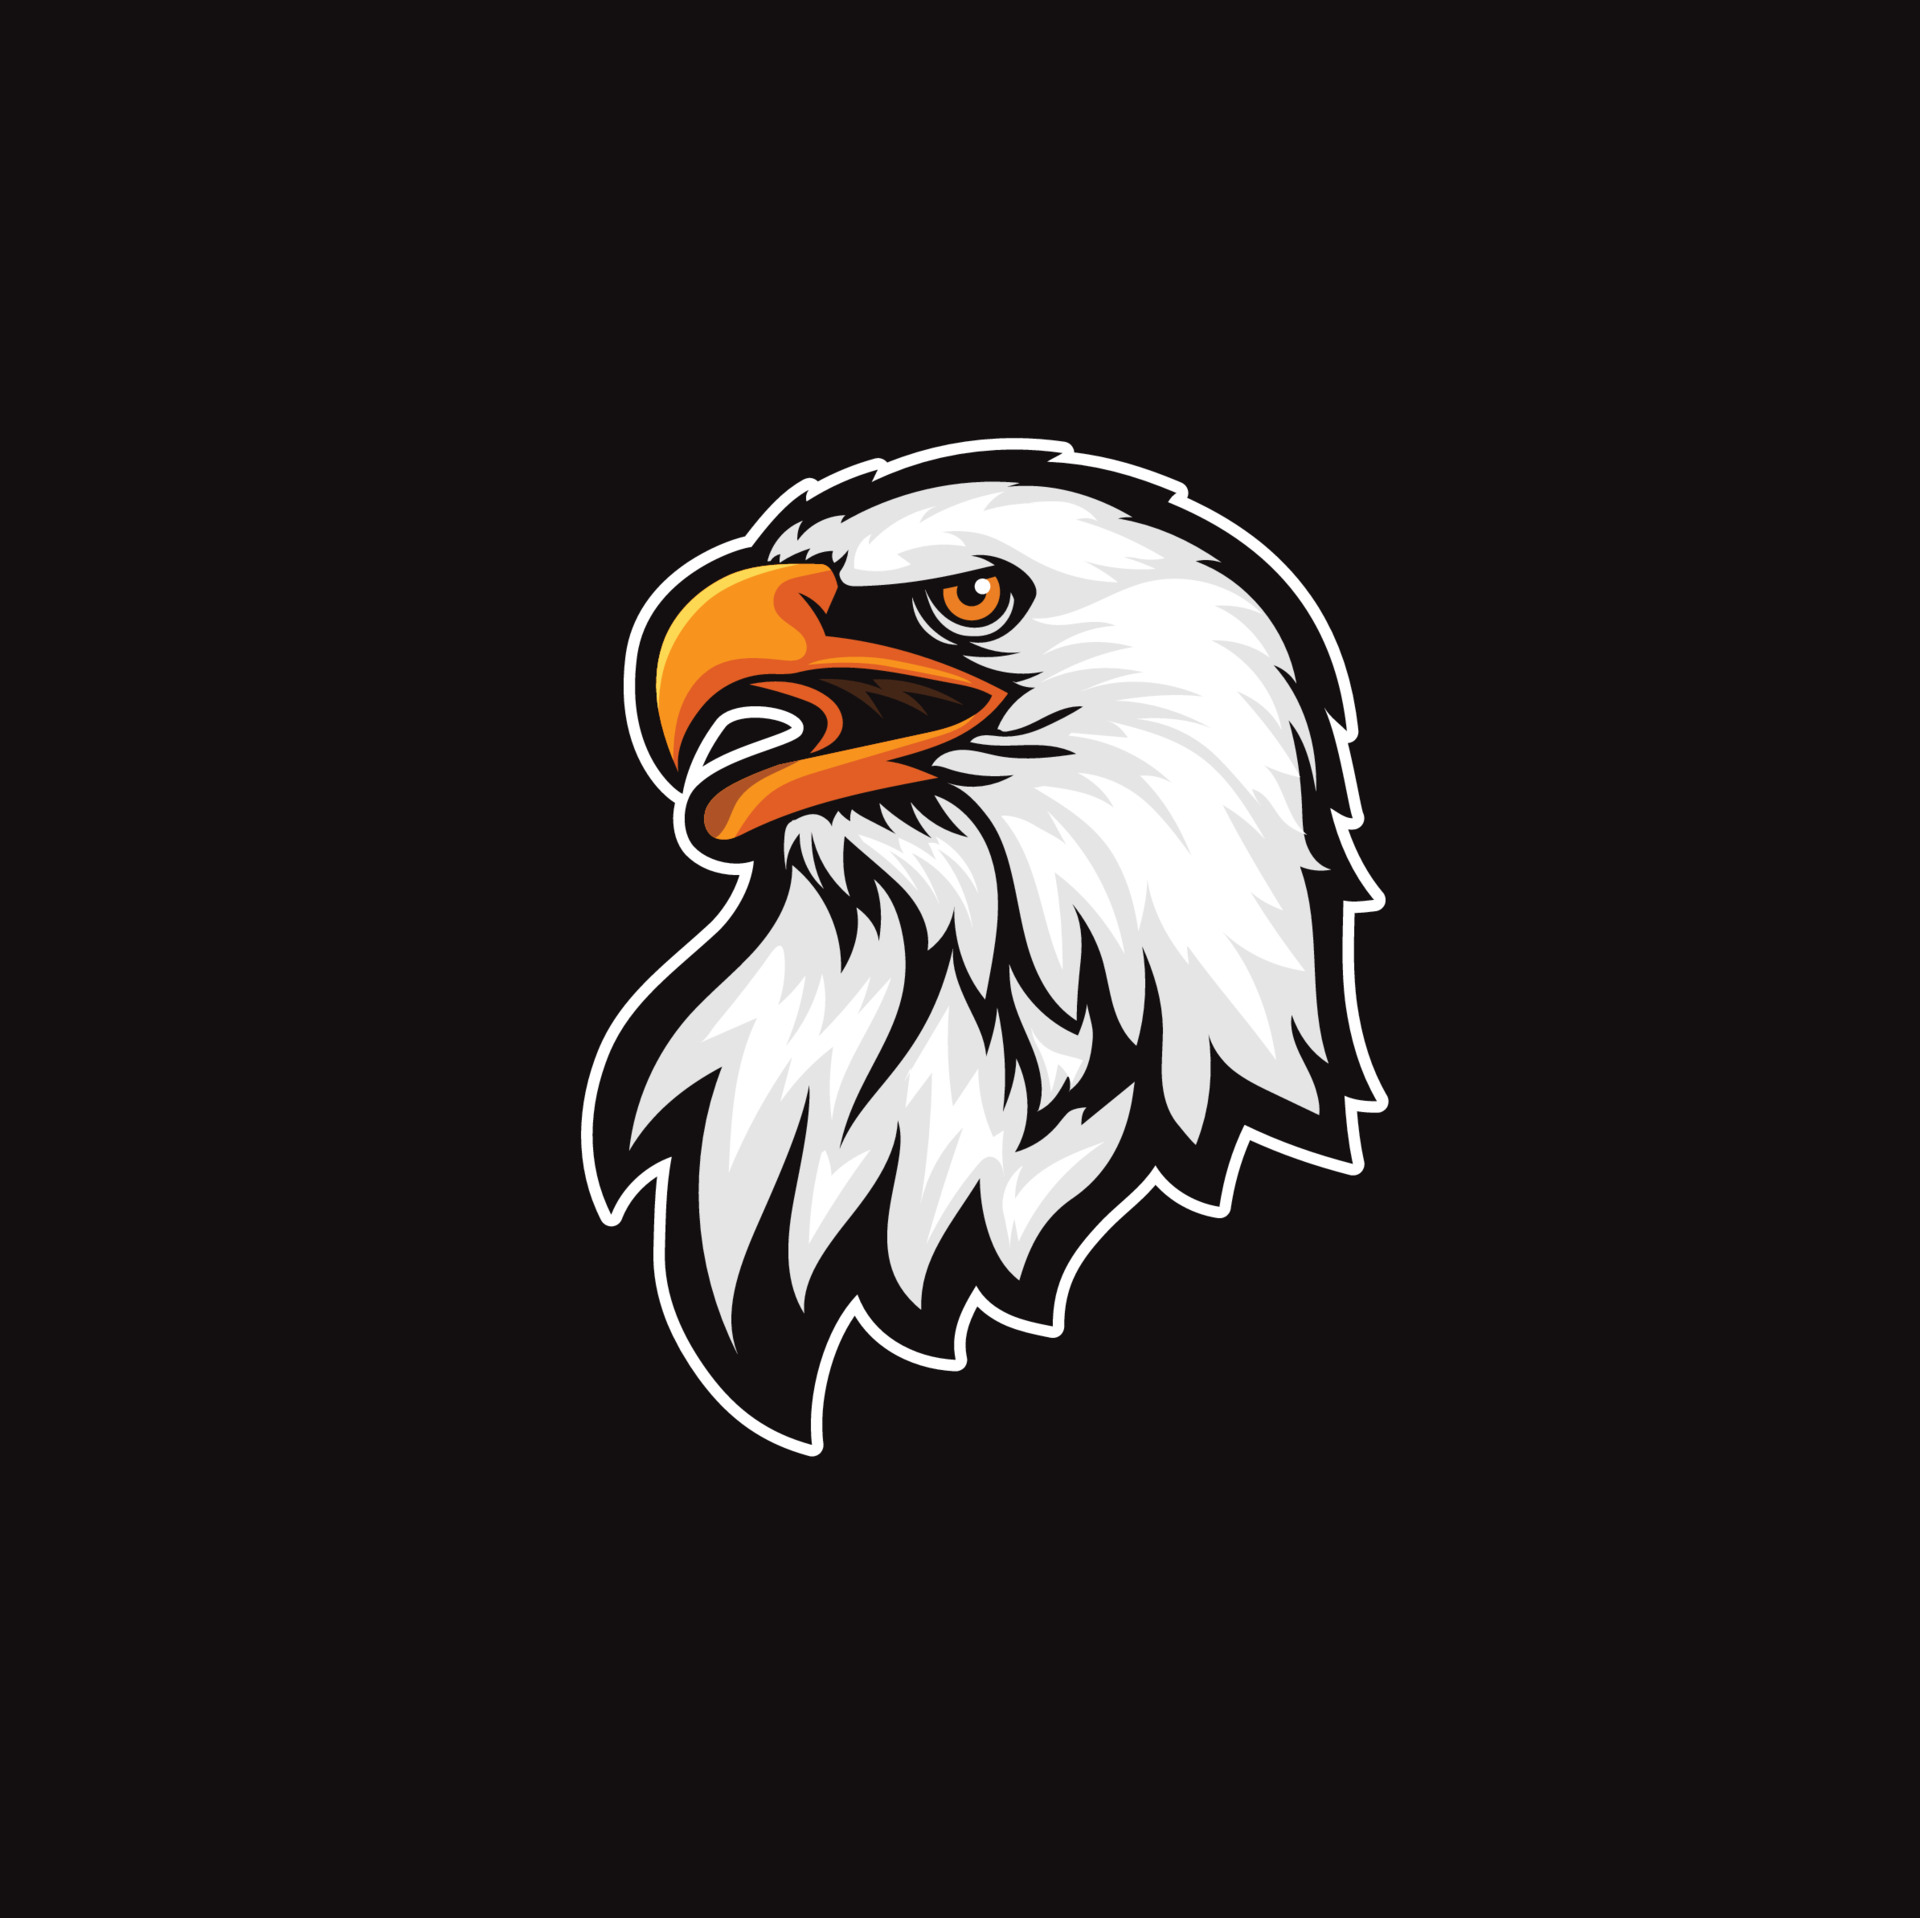 Với hình ảnh Eagle Head Logo Vector, bạn sẽ được cảm nhận được sức mạnh, uy lực, và độc lập của con chim ưng. Với cách sắp xếp tinh tế và kết hợp màu sắc độc đáo, các tác phẩm này thể hiện sự mạnh mẽ và niềm tin của các thương hiệu.